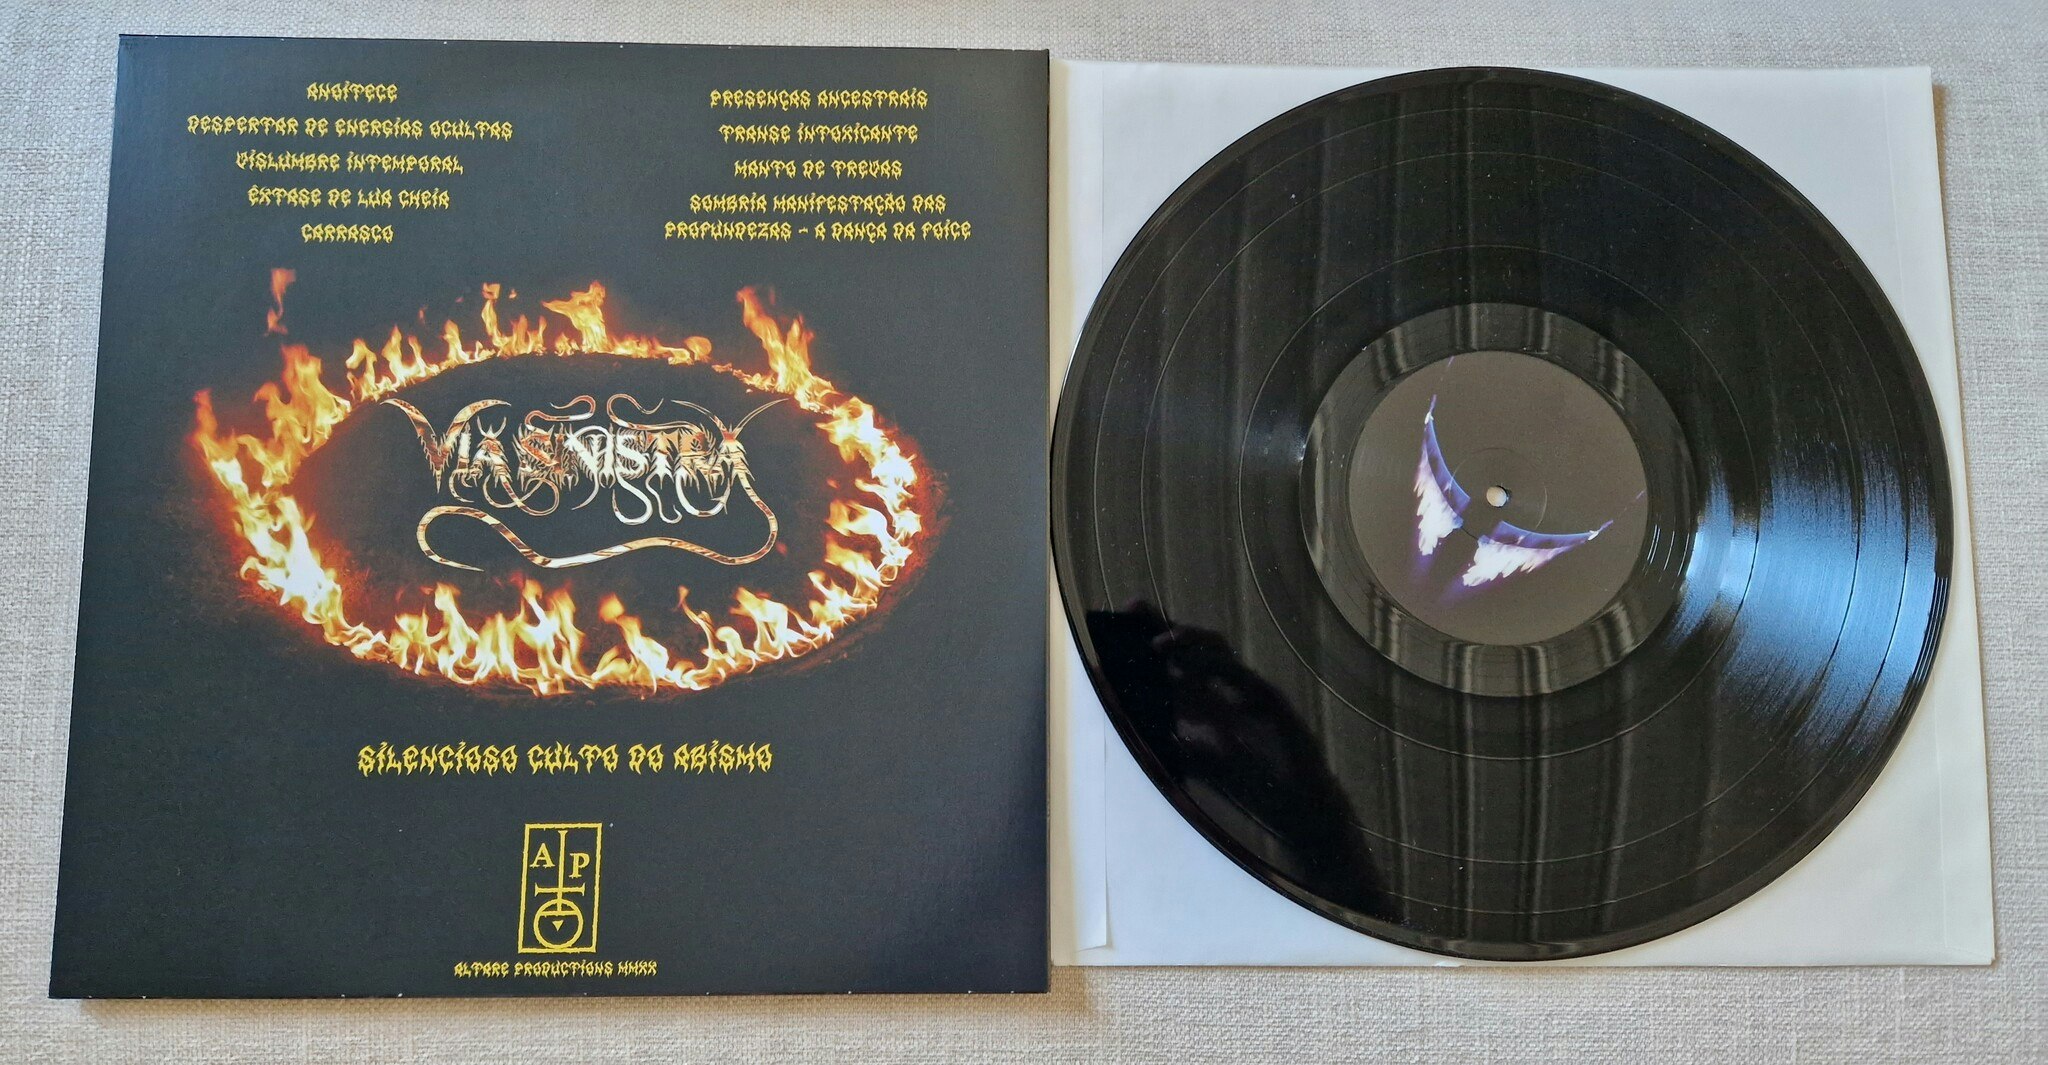 Via Sinistra, Silencioso Culto De Abismo. Vinyl LP